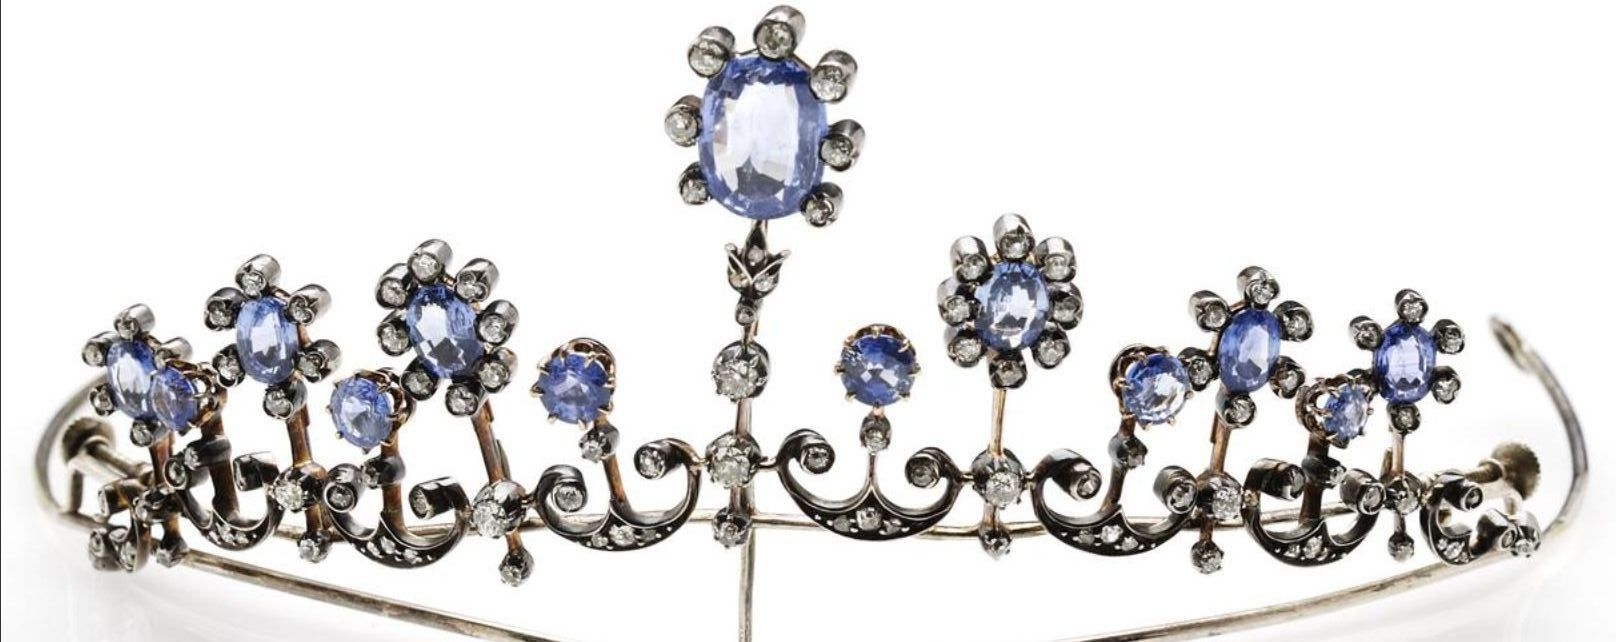 二十世纪蓝宝石和钻石项链,头饰,长度42厘米